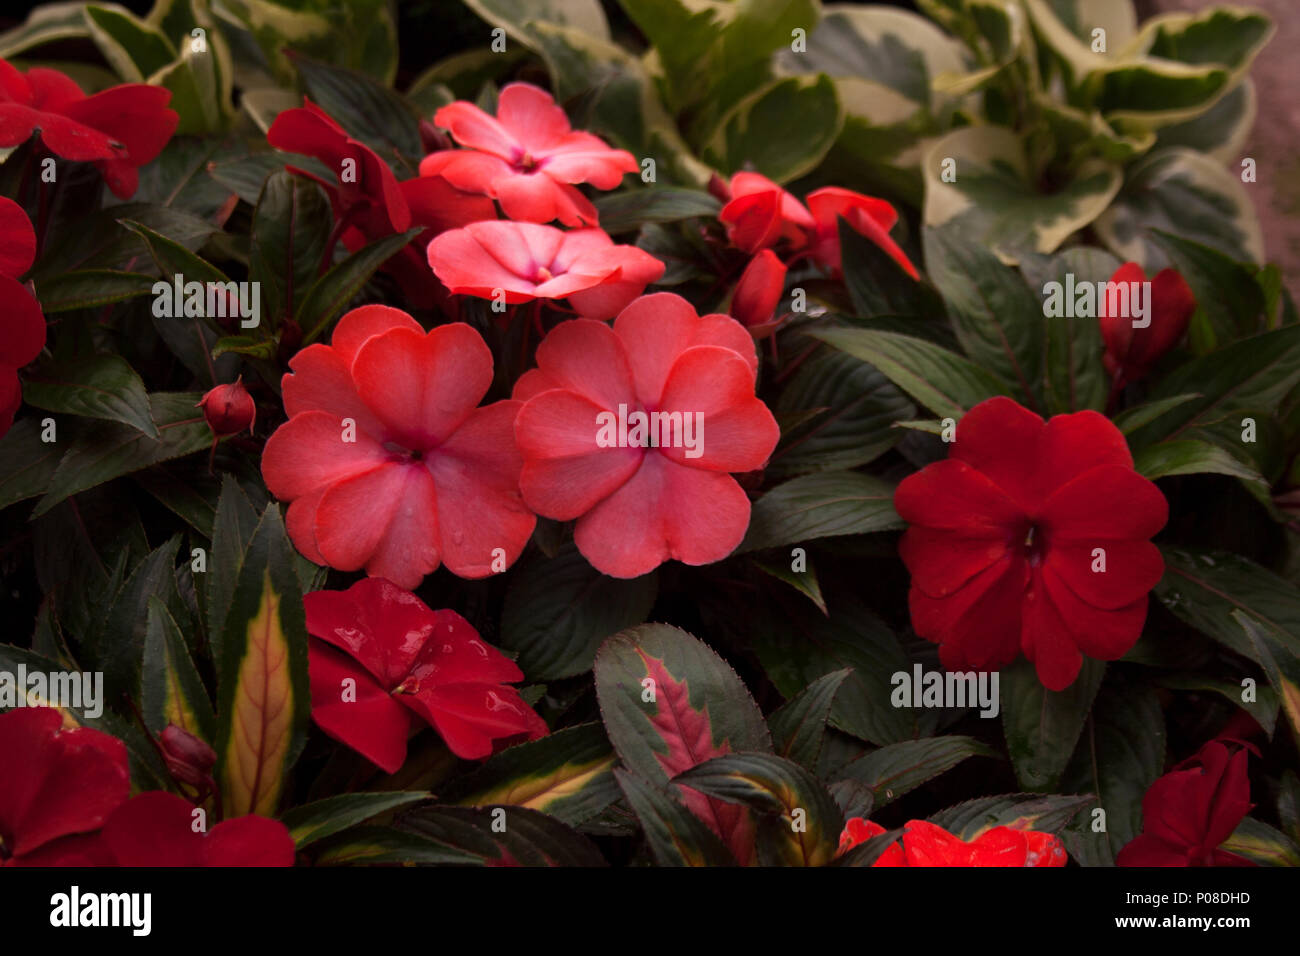 El rosa y el rojo impatiens flores con pétalos en forma de corazón Foto de stock